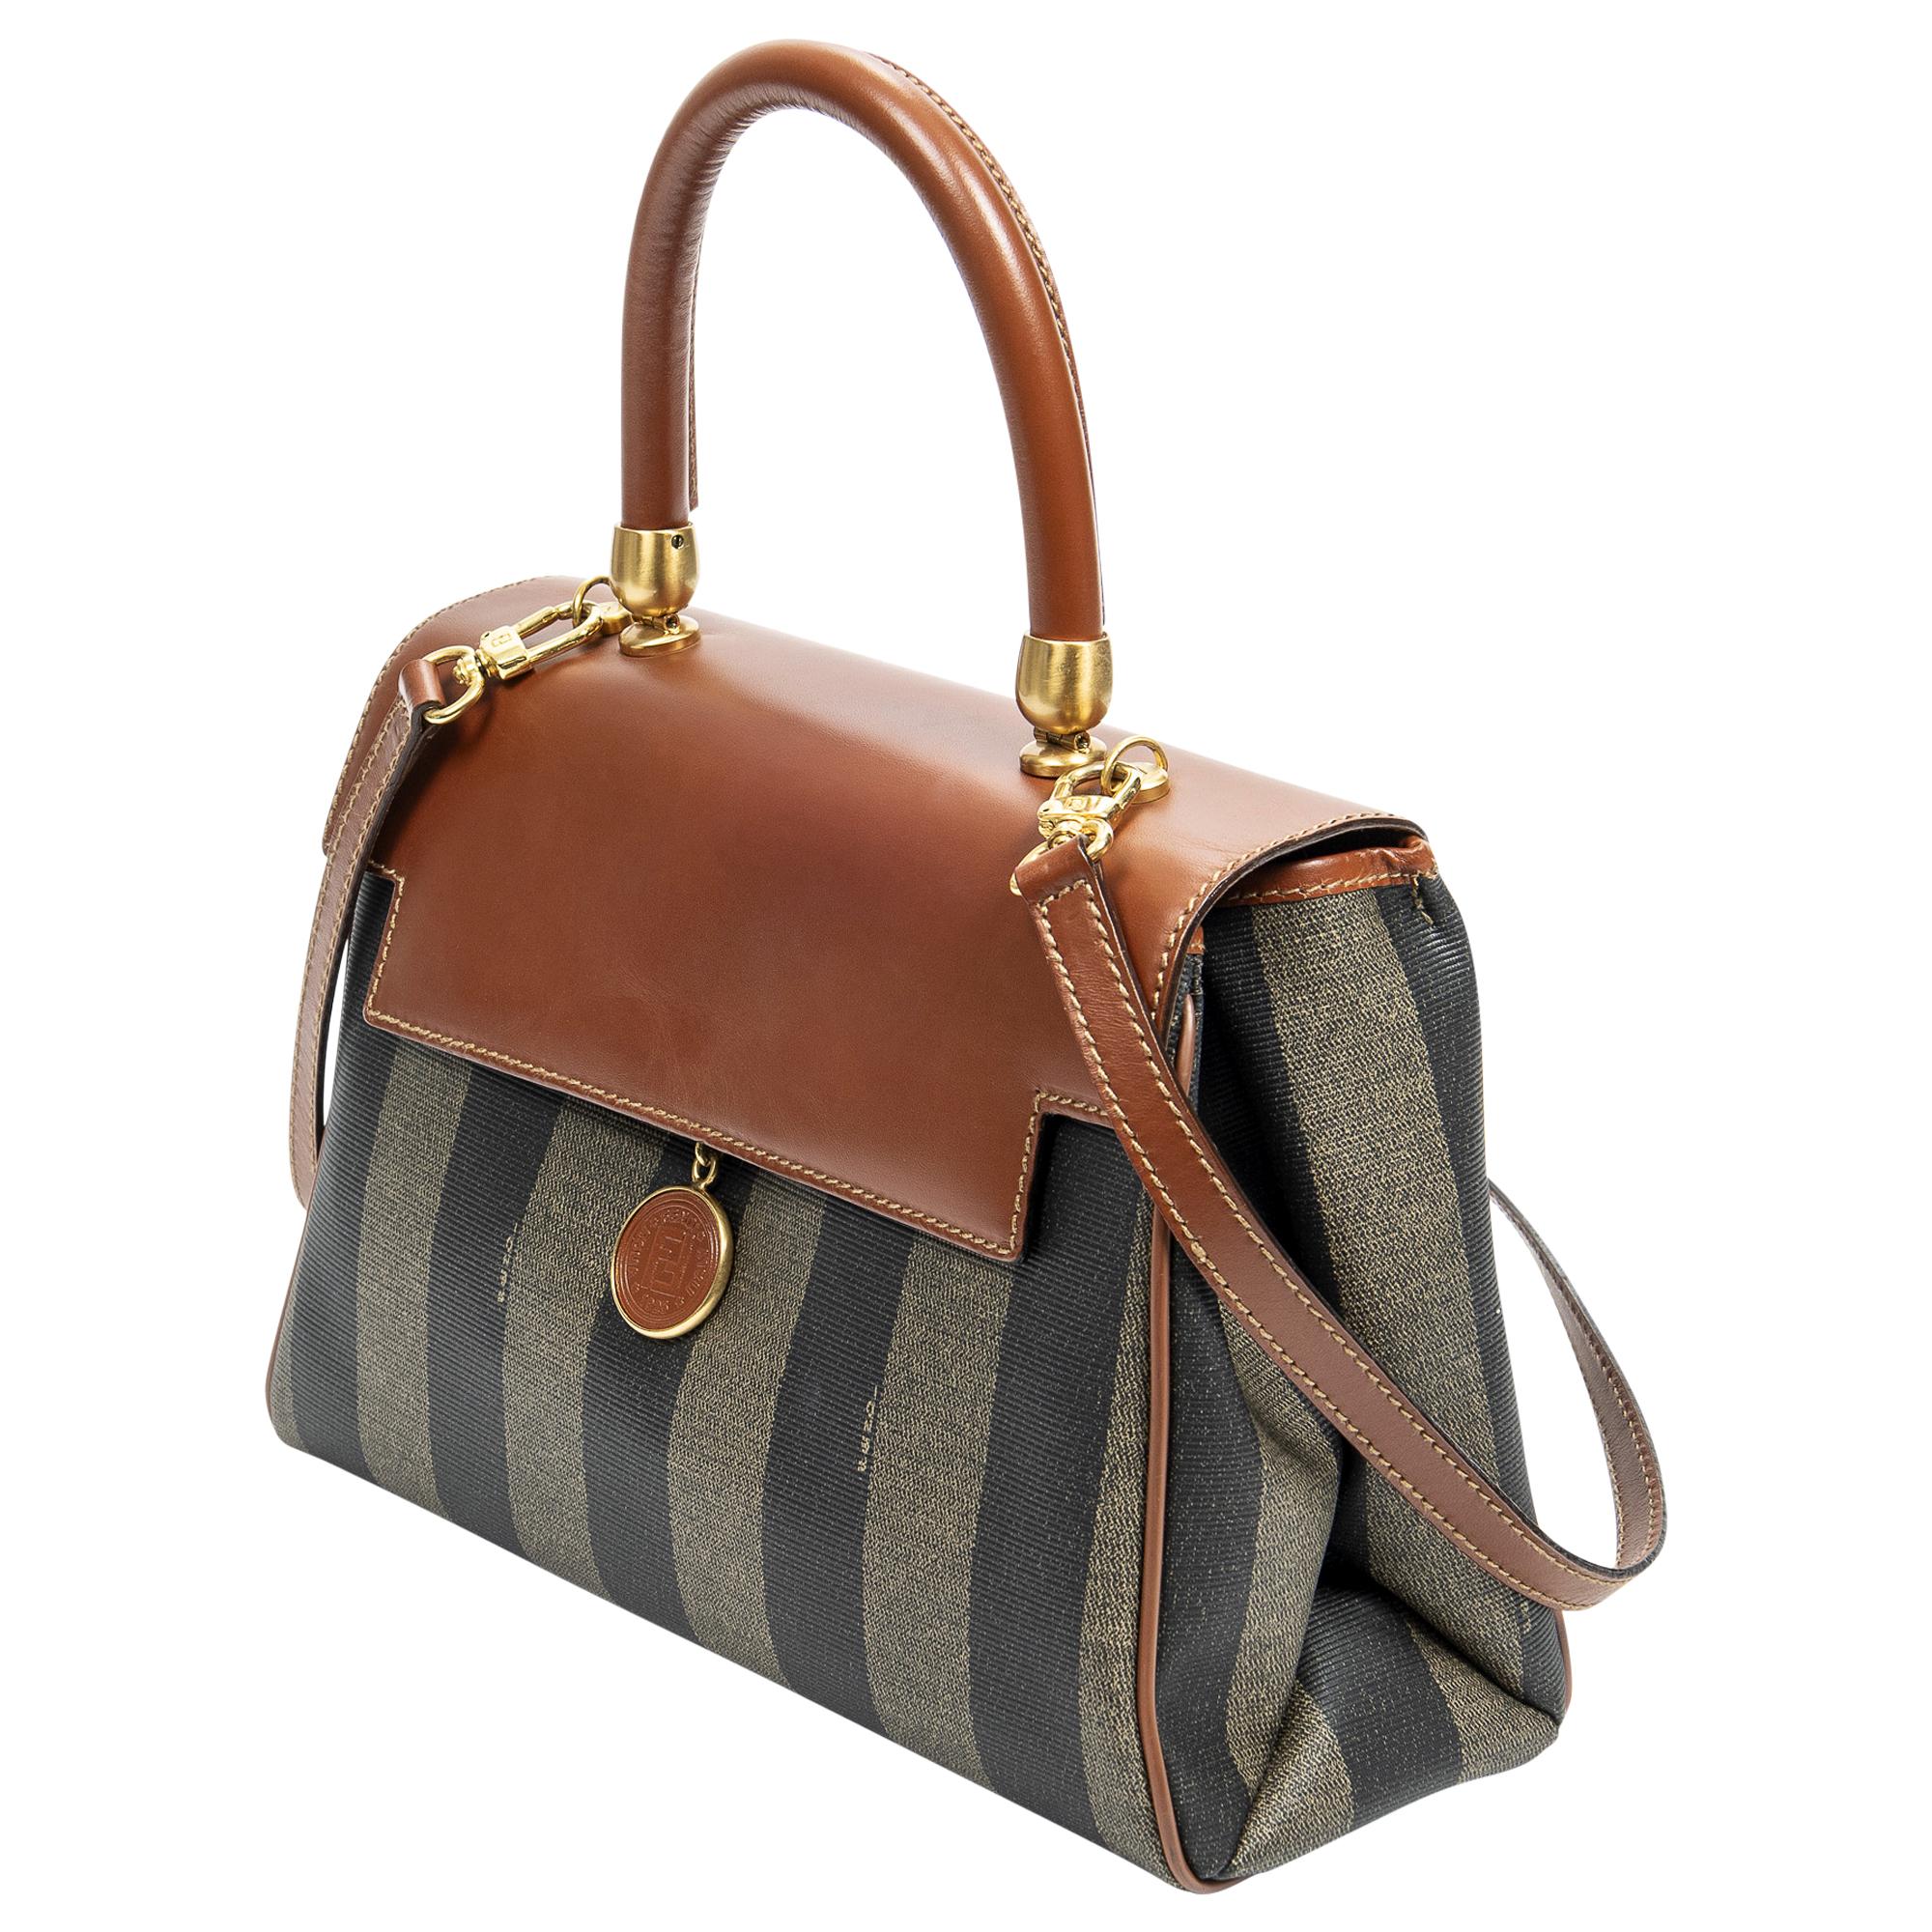 Die Fendi Brown Vintage Pequin Top Handle Bag ist ein zeitloses Stück für den anspruchsvollen Modefan. Diese Tasche aus strapazierfähigem braunem beschichtetem Canvas verfügt über einen eleganten goldenen Verschluss, der ihr einen Hauch von Luxus